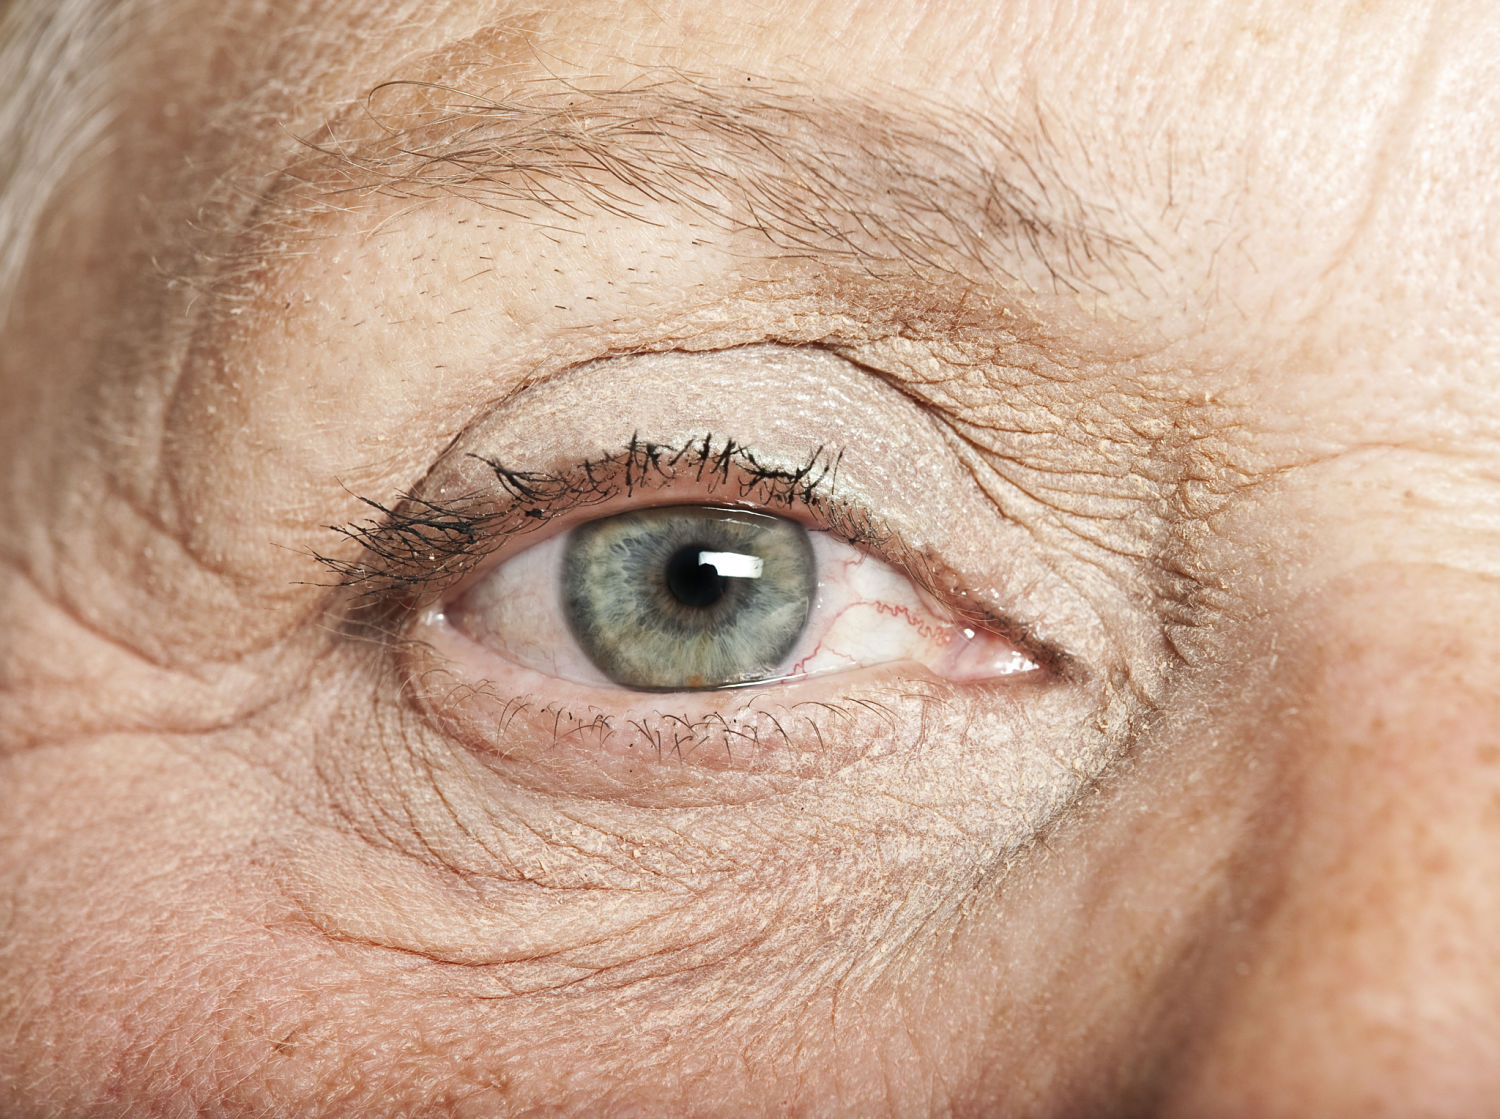 Eye, from Shutterstock